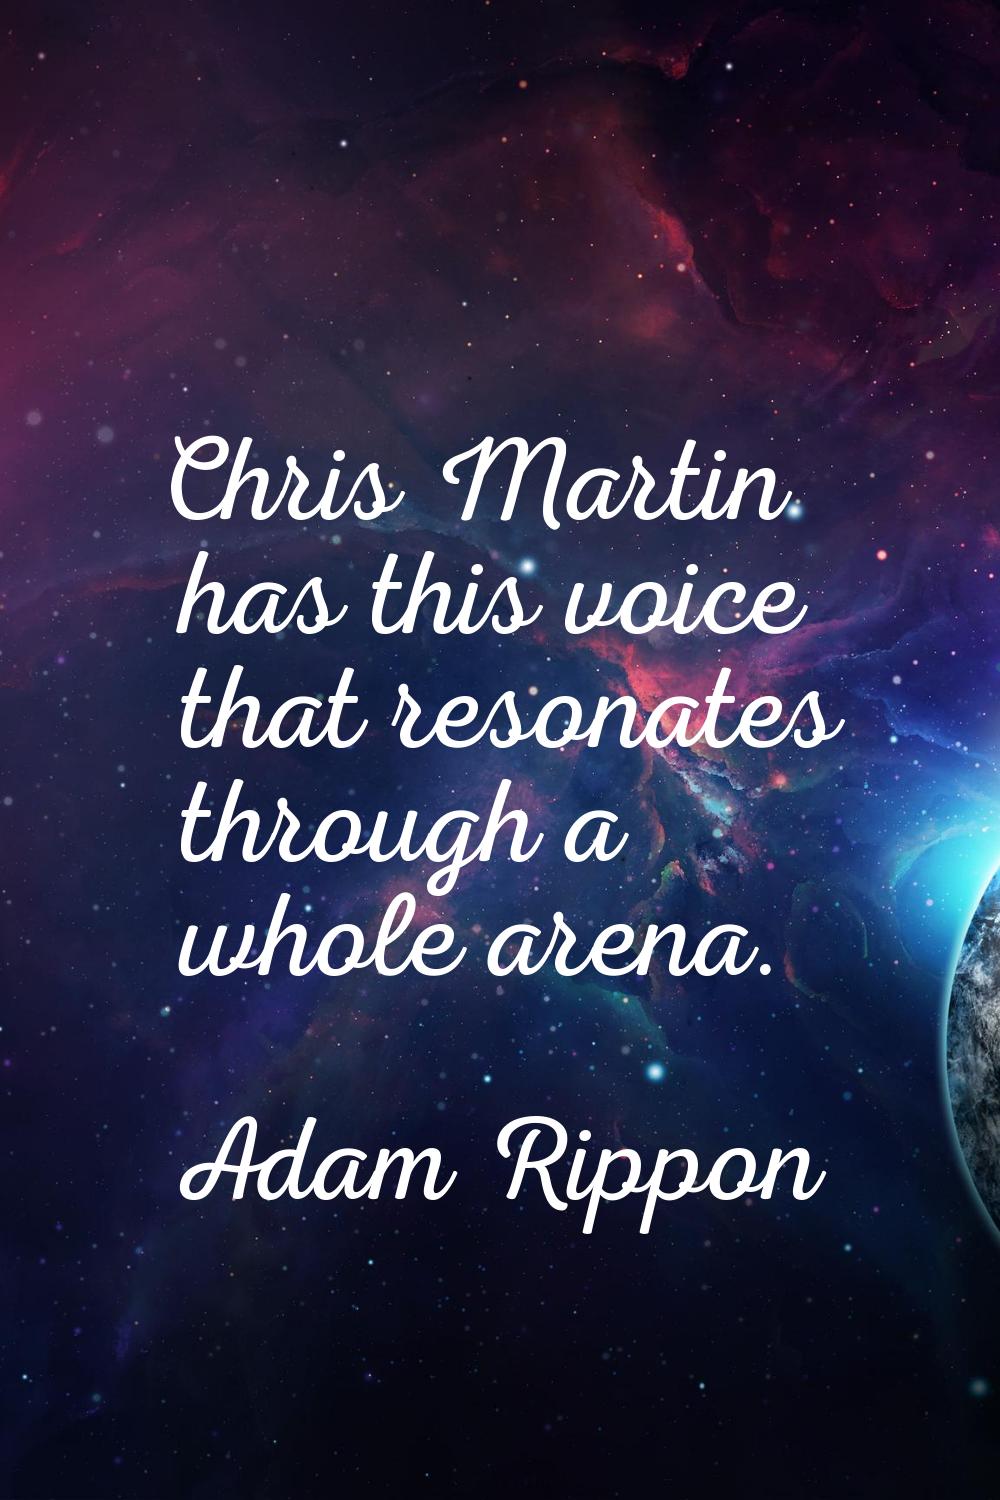 Chris Martin has this voice that resonates through a whole arena.